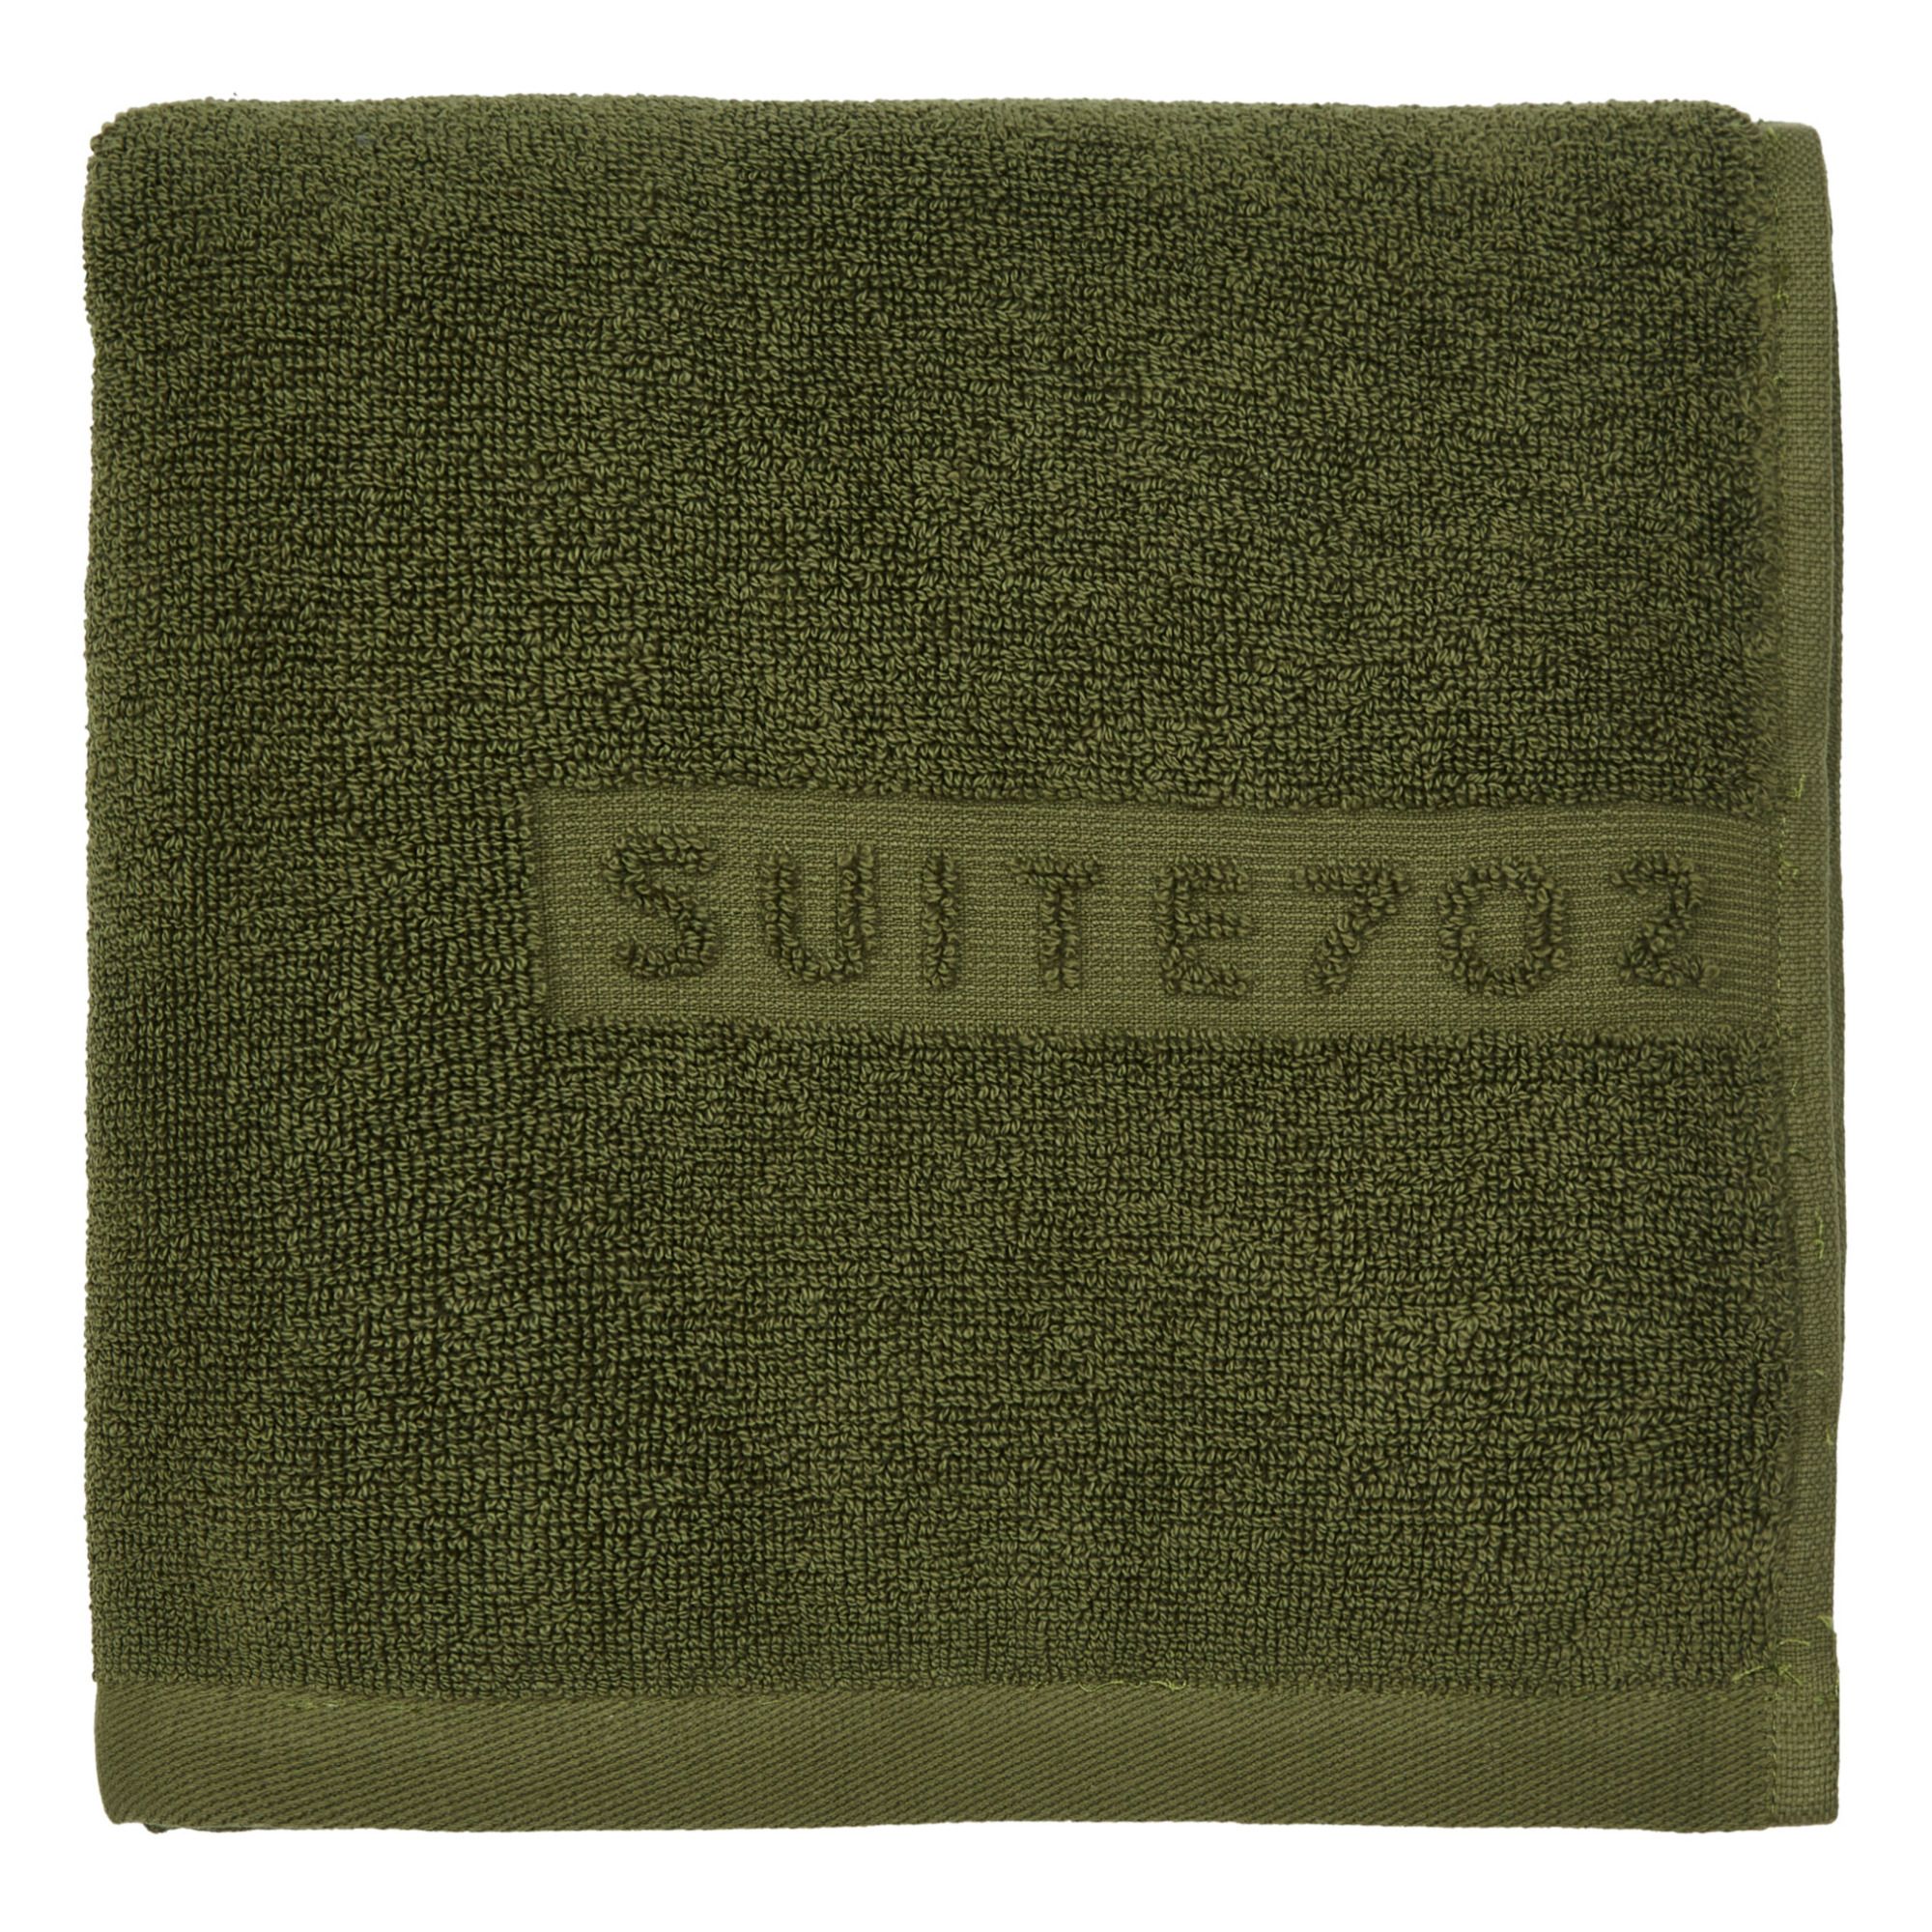 Suite 702 - Serviette de toilette en coton bio - Vert mousse